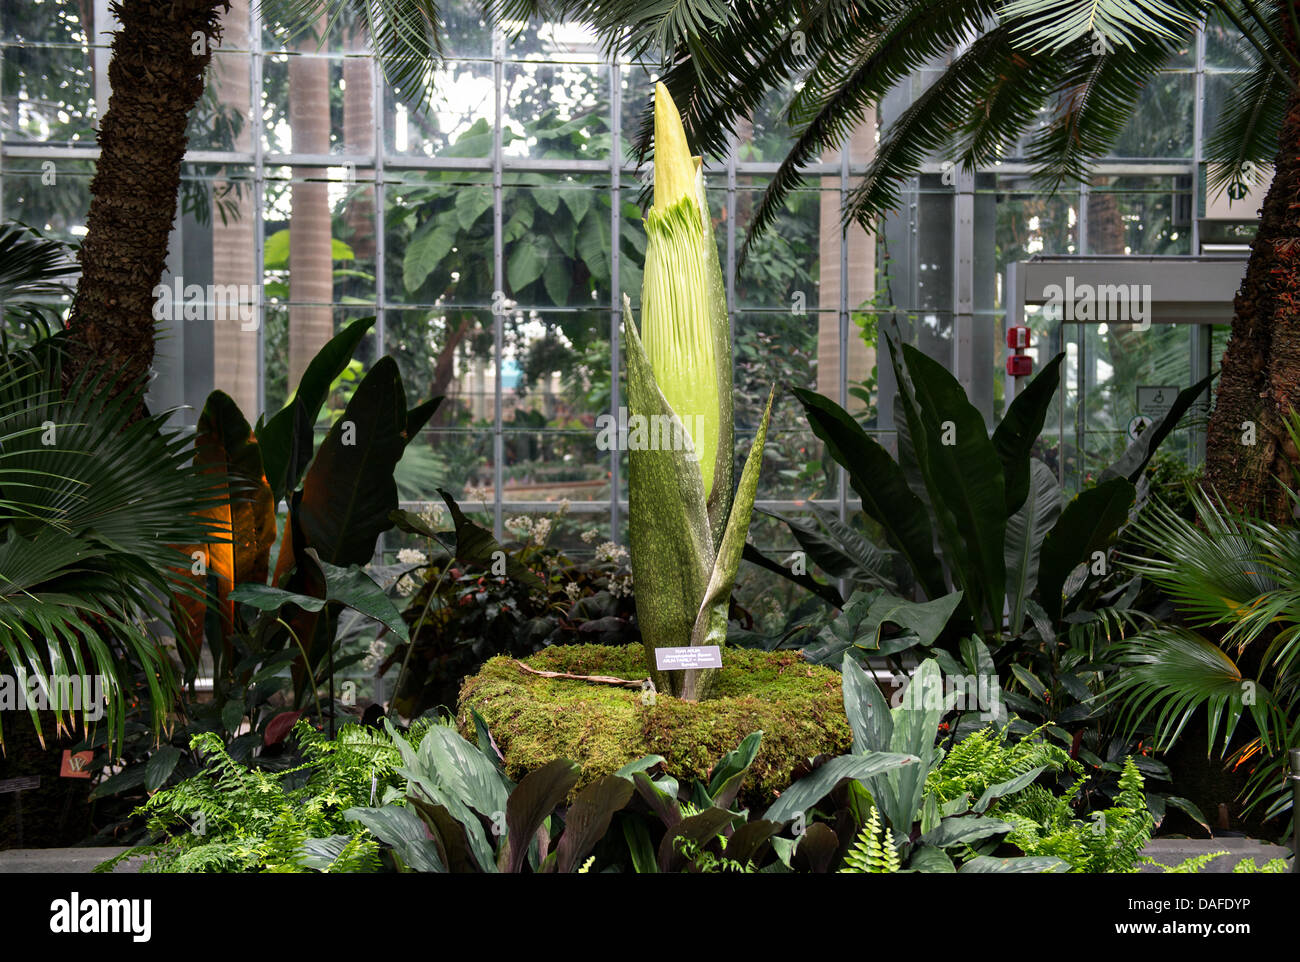 L'arum titan, également connu sous le nom de la fleur ou plante cadavre puant, est sur le point de fleurir à l'United States Botanic Garden Conservatory le 12 juillet 2013 à Washington, DC. La fleur géante a une odeur qui rappelle l'odeur de décomposition d'un mammifère. Banque D'Images